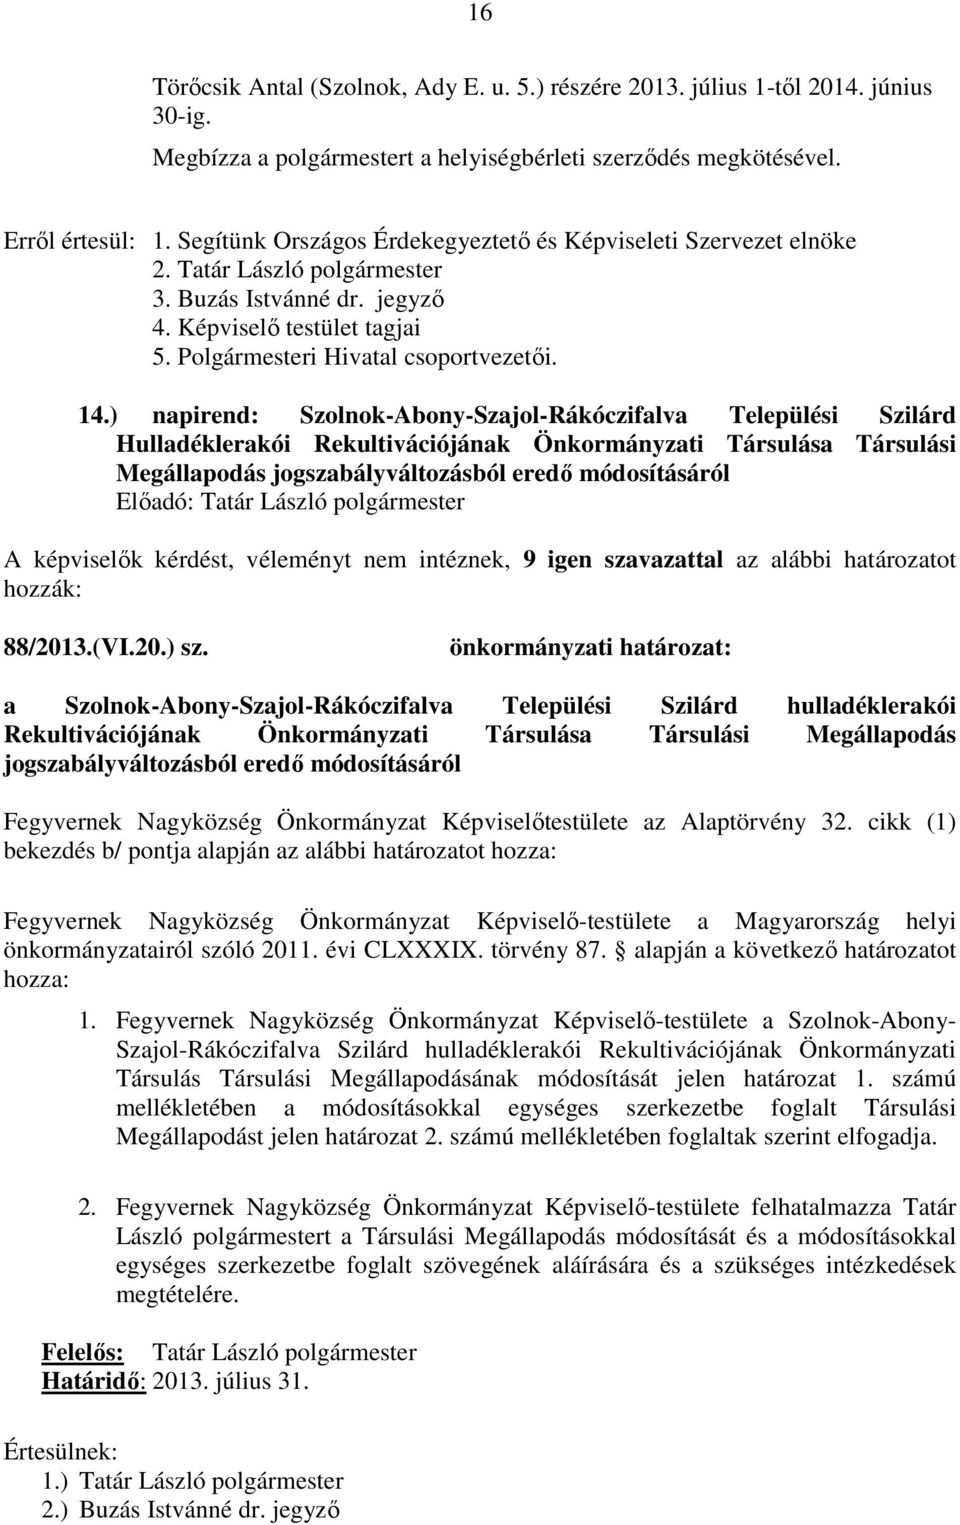 ) napirend: Szolnok-Abony-Szajol-Rákóczifalva Települési Szilárd Hulladéklerakói Rekultivációjának Önkormányzati Társulása Társulási Megállapodás jogszabályváltozásból eredő módosításáról A